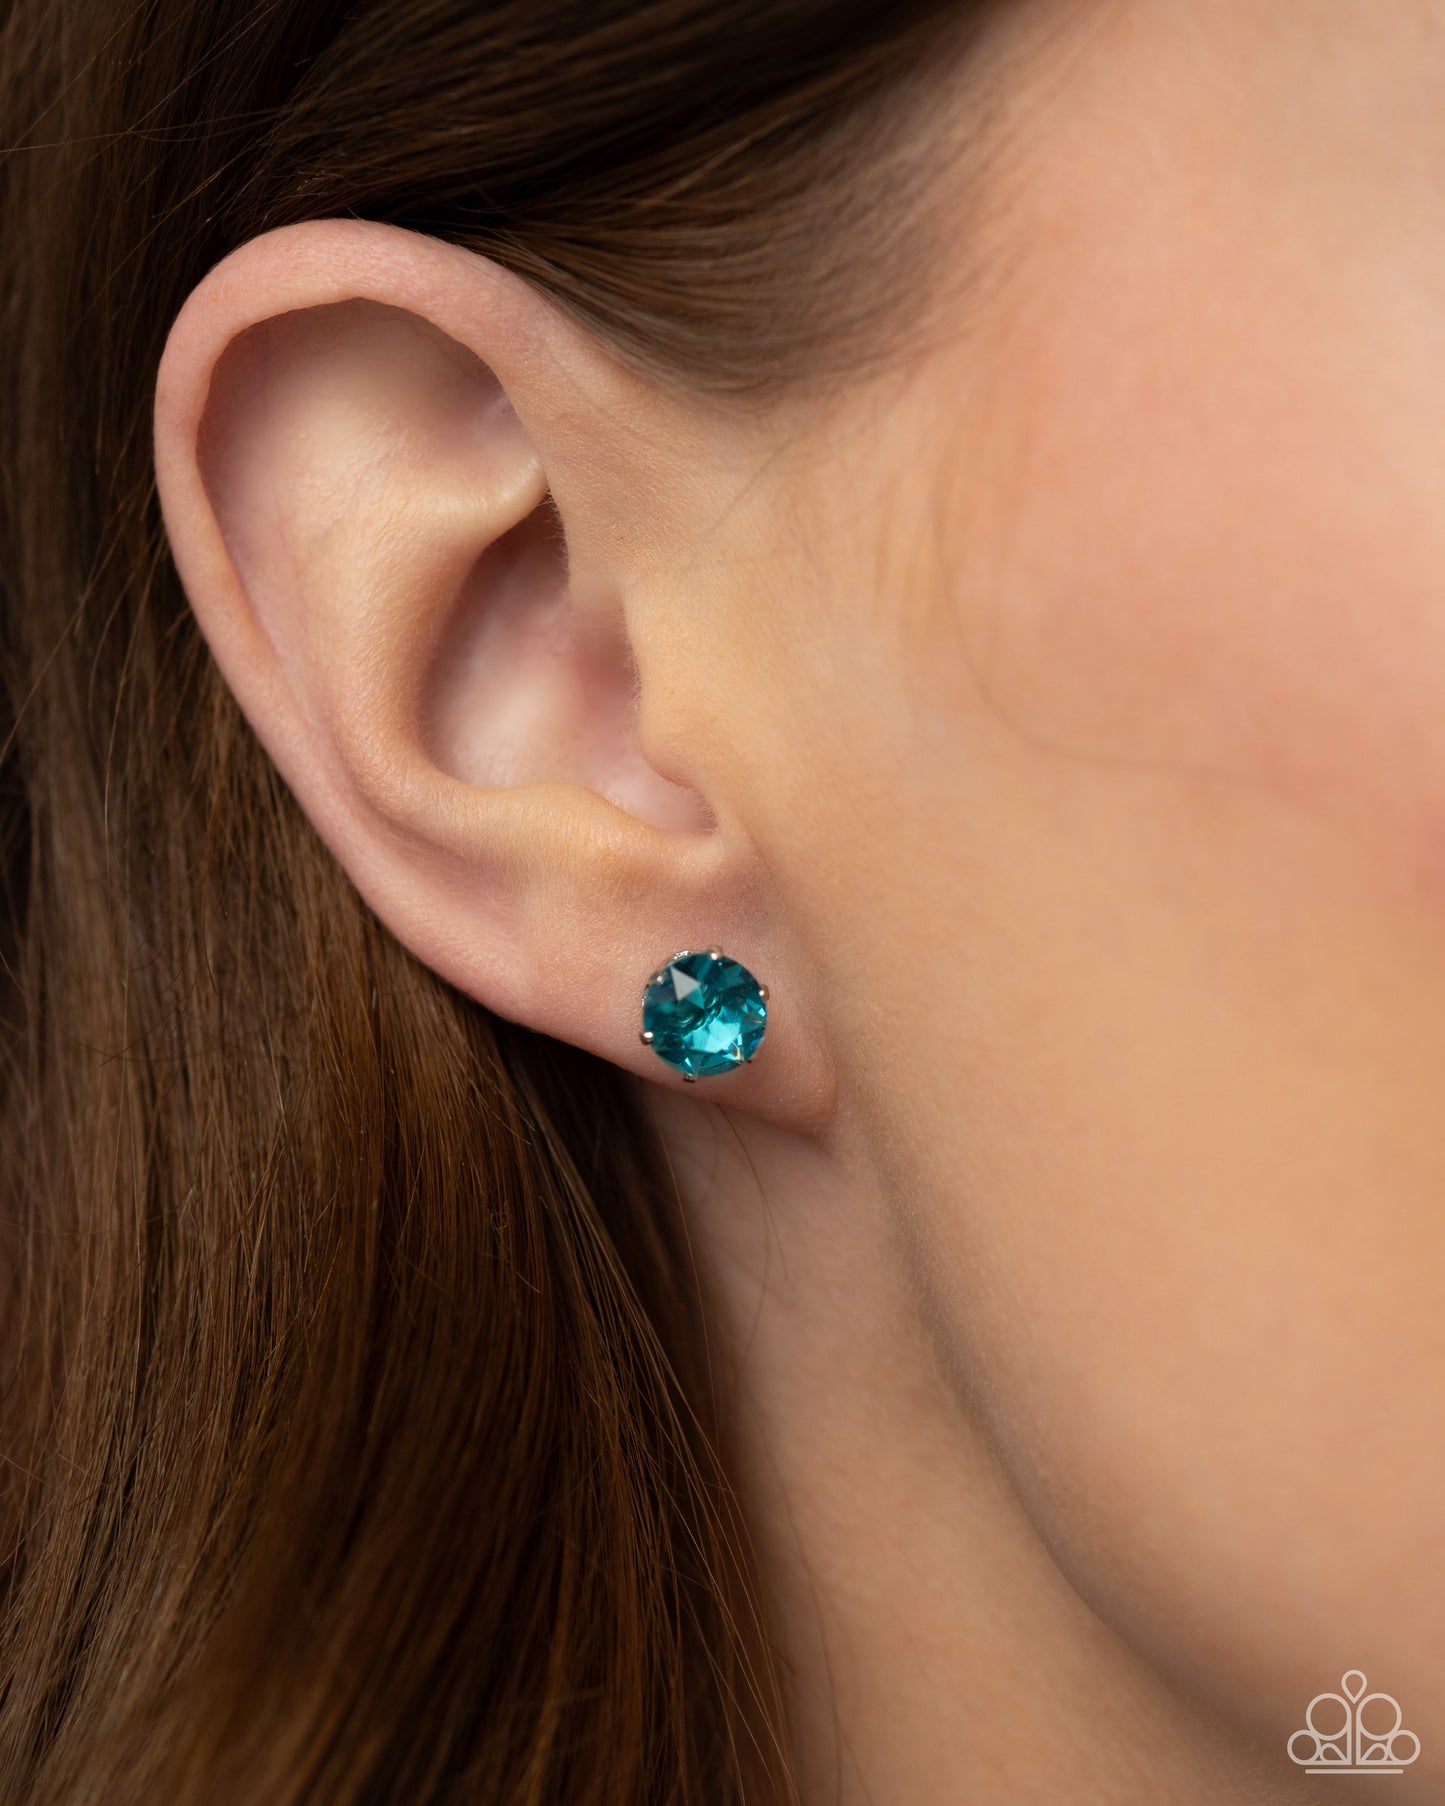 Breathtaking Birthstone - Blue Earrings